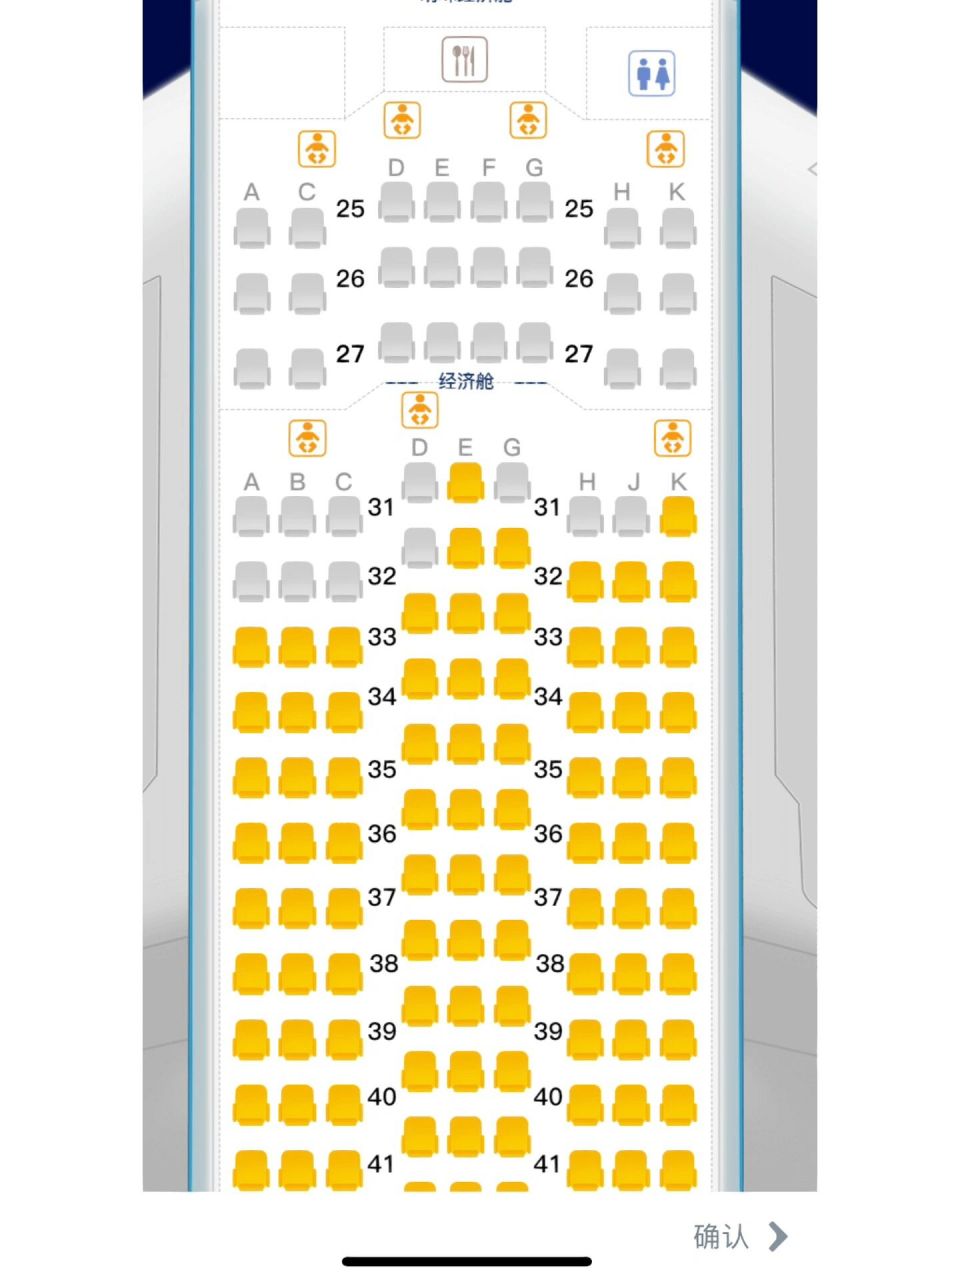 东航空客350内部座位图图片